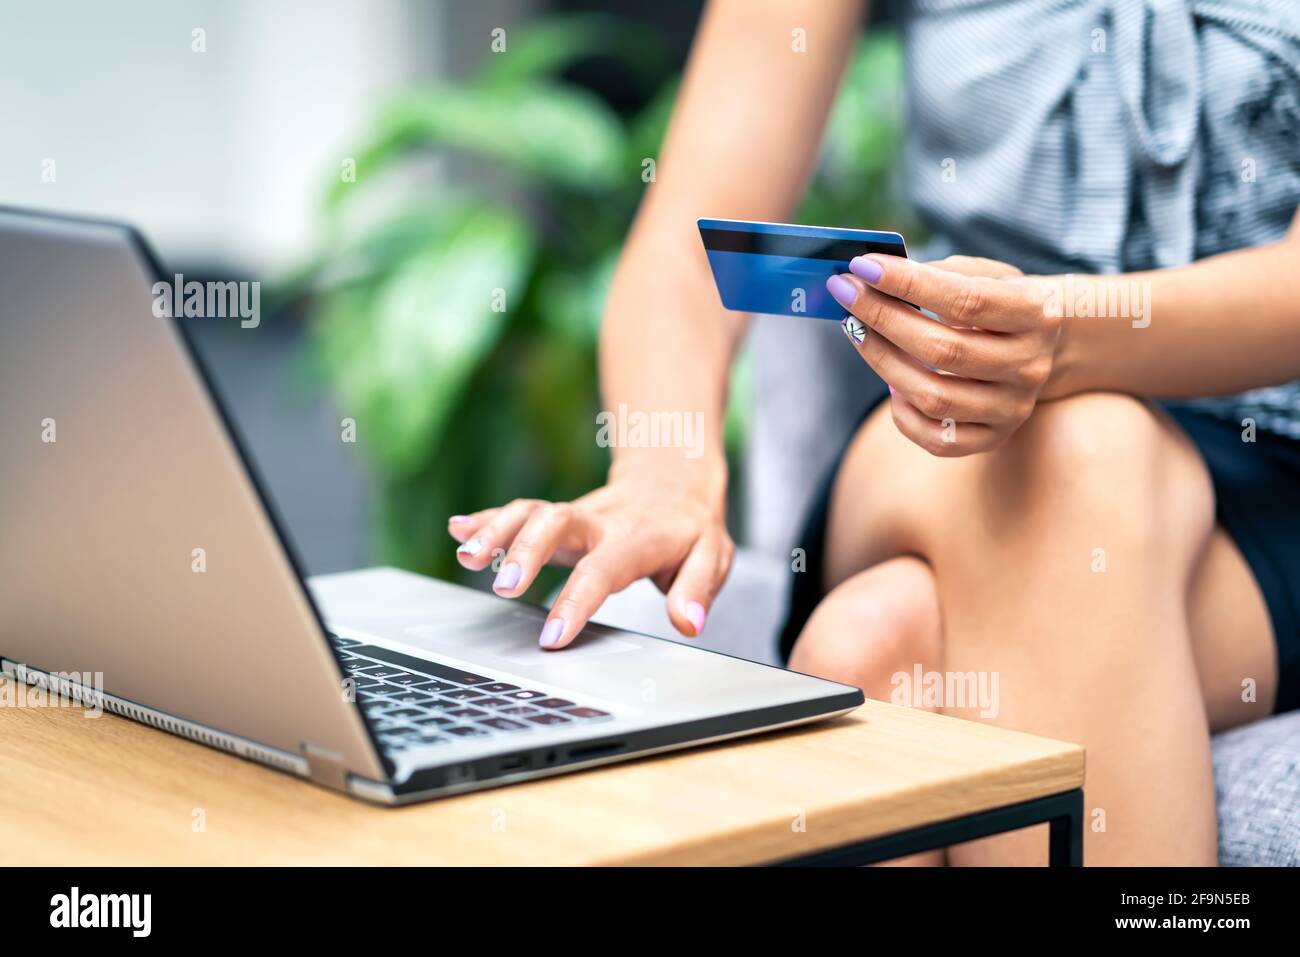 Kreditkartenzahlung und Bezahlung mit Laptop. Frau, die online einkauft und im Internet kauft. E-Commerce- oder Transaktionssicherheit vor Betrug. Stockfoto